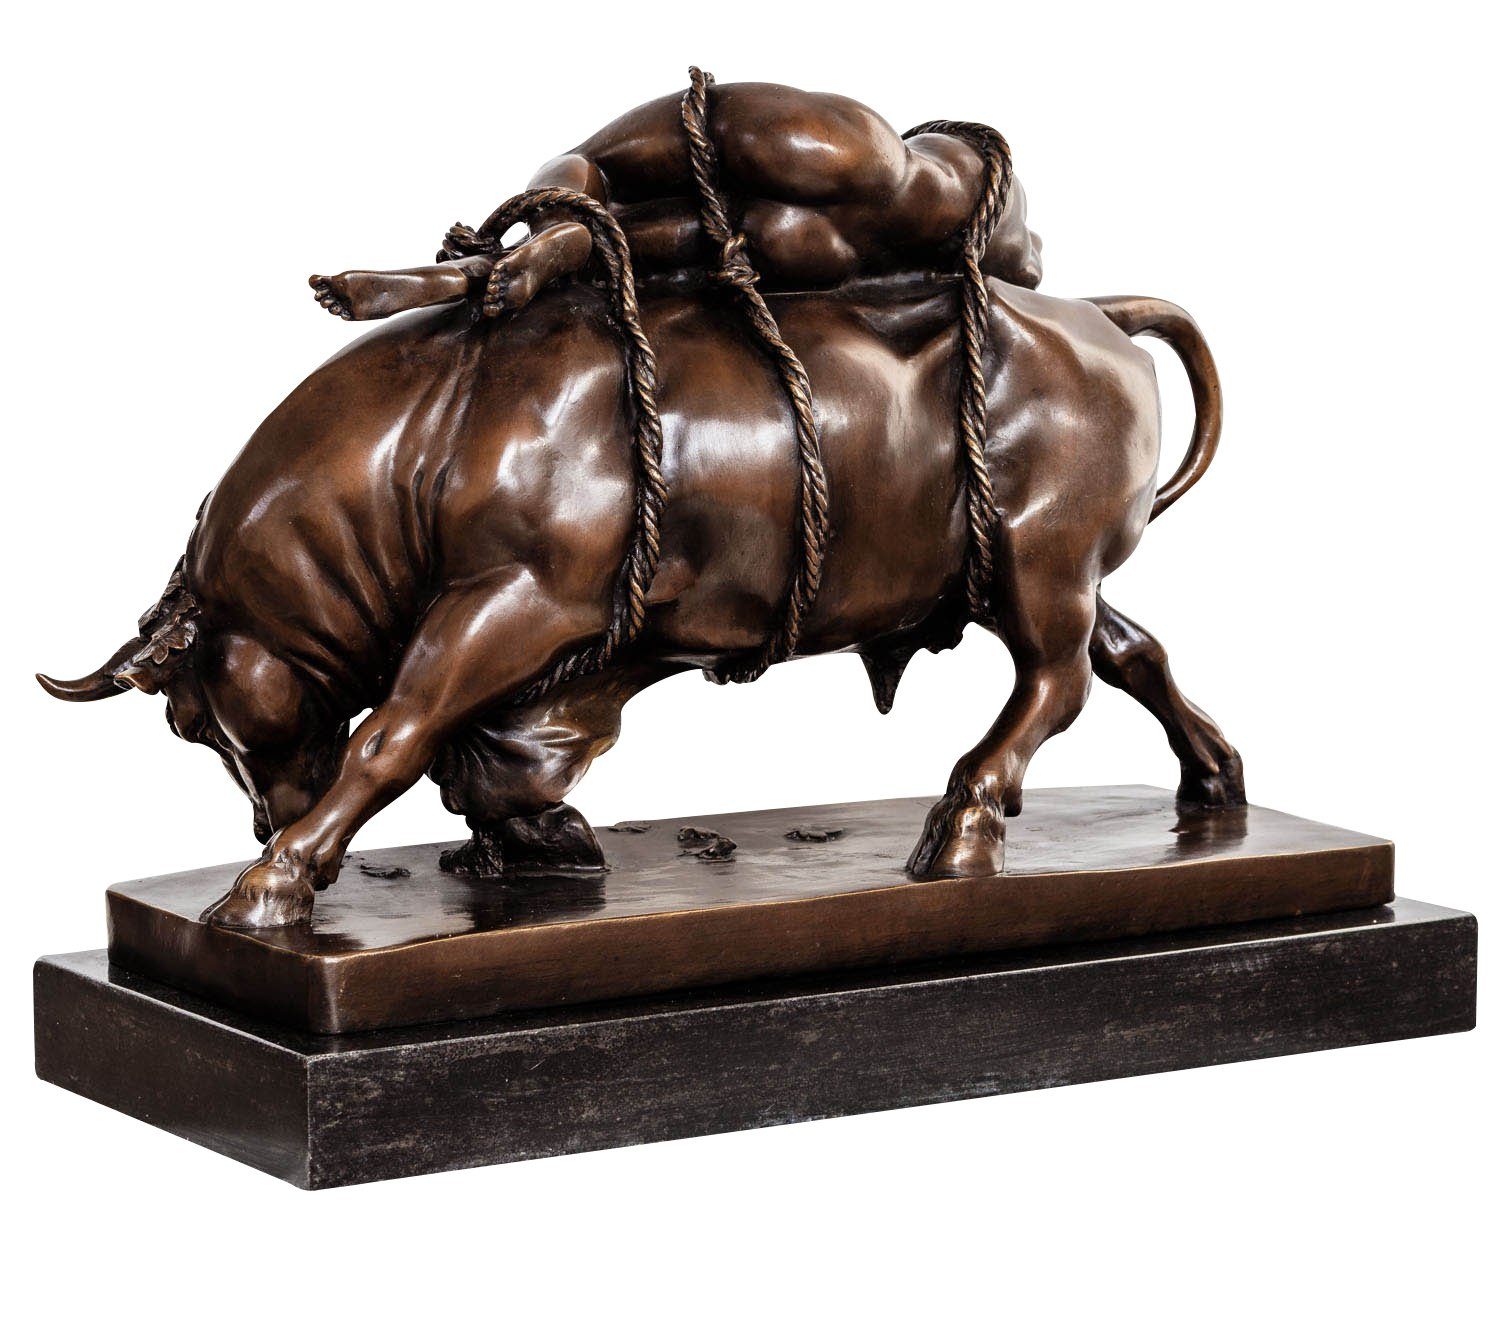 Aubaho Skulptur Bronzeskulptur Europa Stil nach Bronze Debut Skulpt Stier Figur Marcel